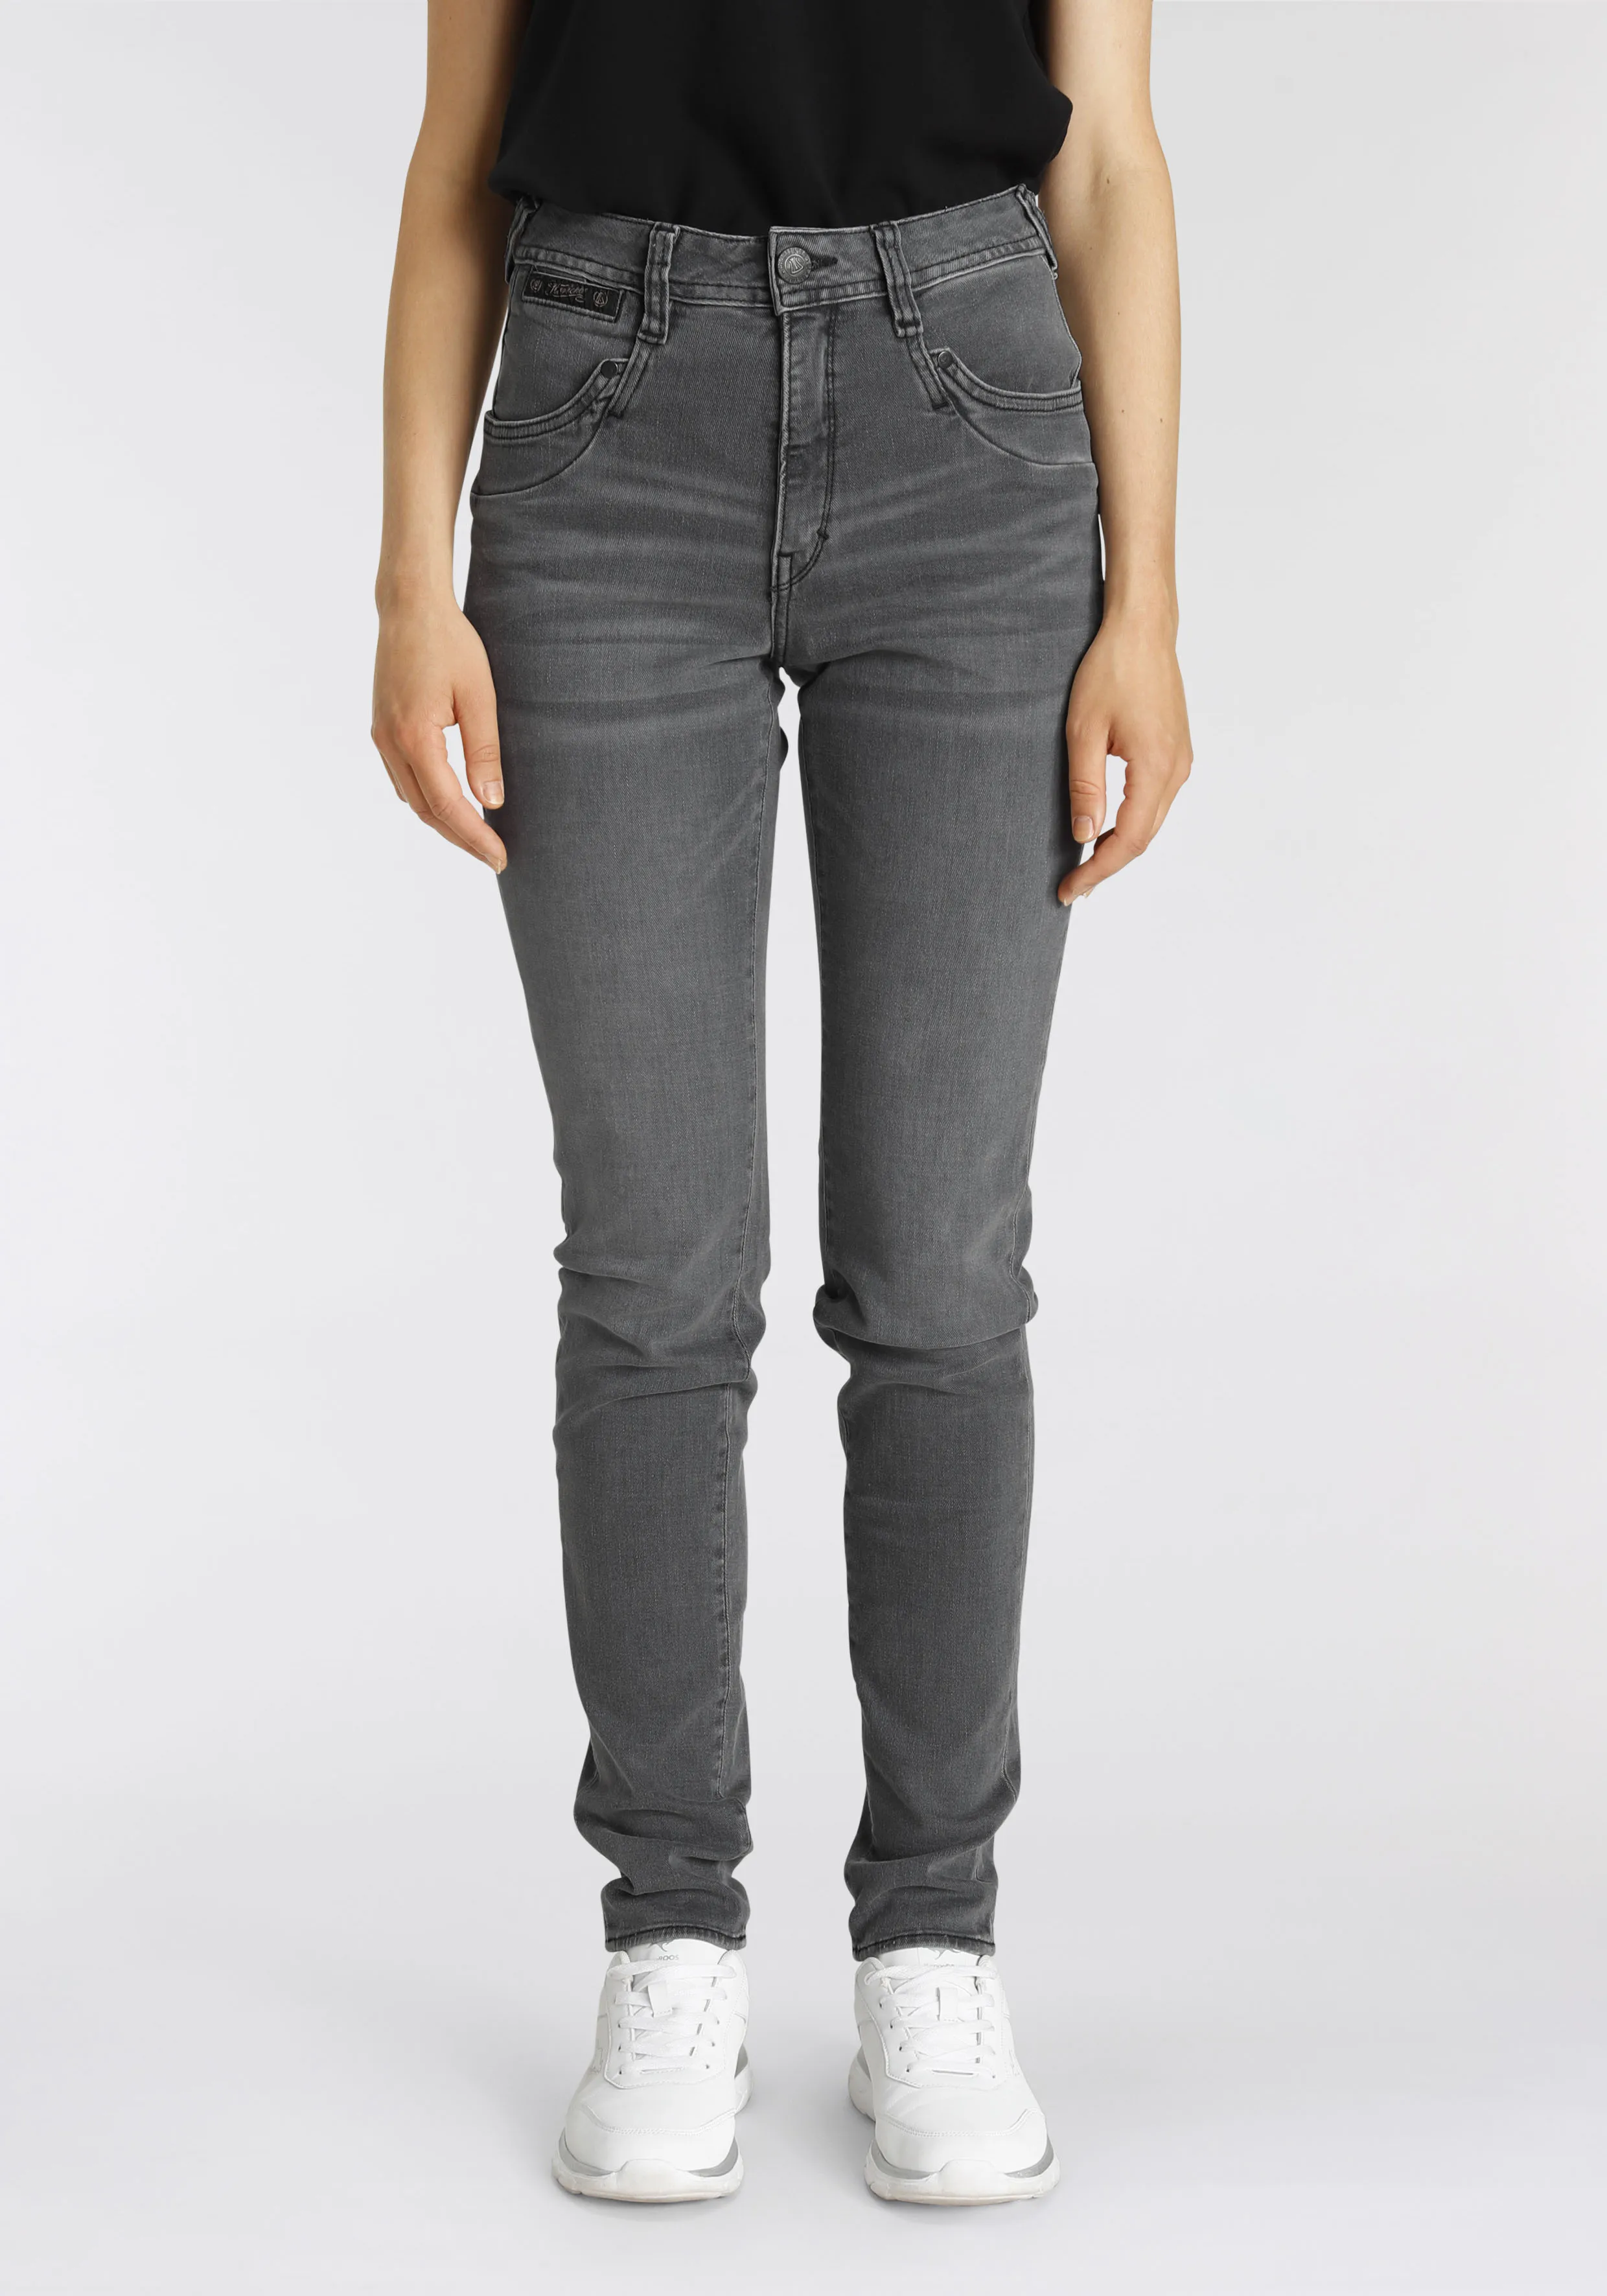 High-waist-Jeans HERRLICHER "PIPER HI SLIM ORGANIC DENIM CASHMERE TOUCH" Gr. 29, Länge 30, grau (o x y) Damen Jeans Röhrenjeans umweltfreundlich dank Kitotex Technologie